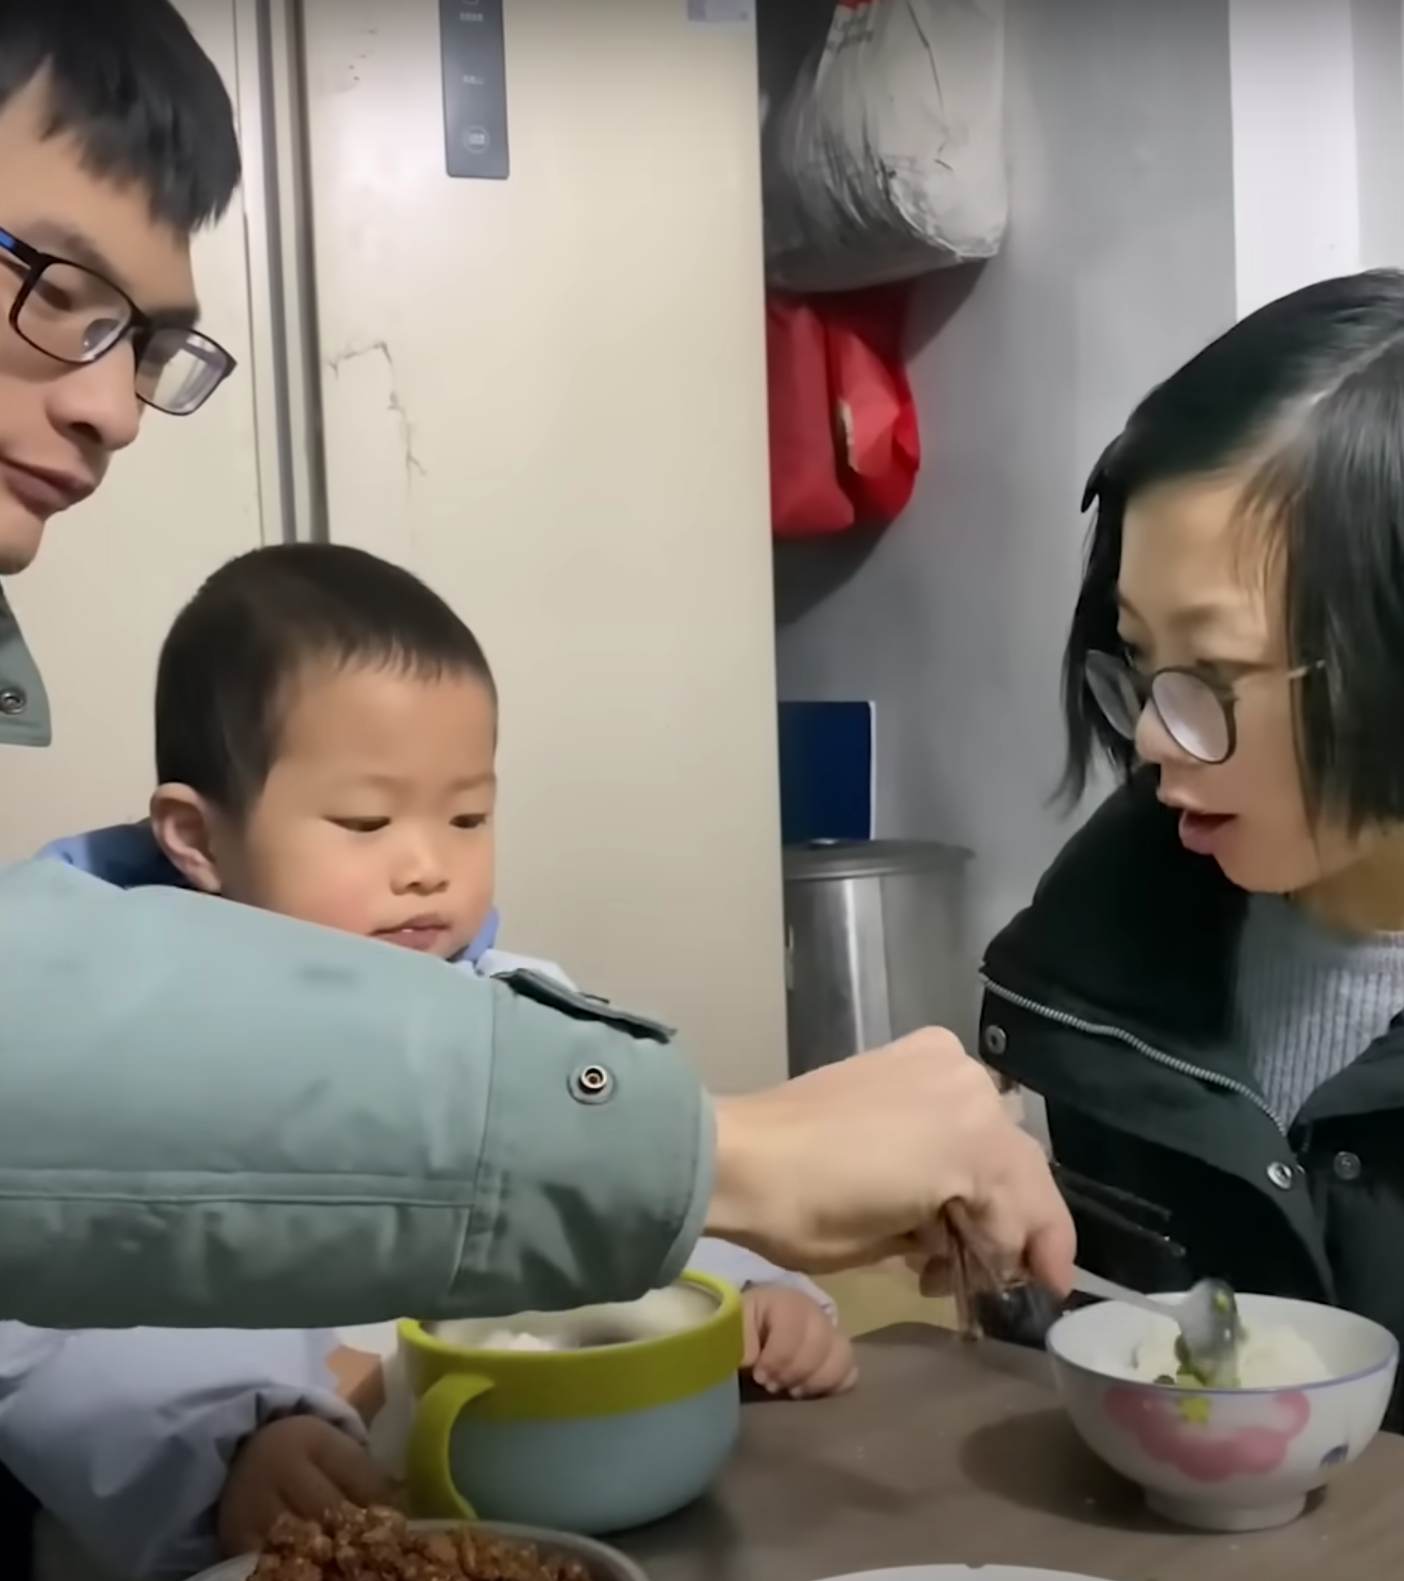 Pomelo et ses parents profitent de leur vie ensemble. | Source : Youtube.com/South China Morning Post